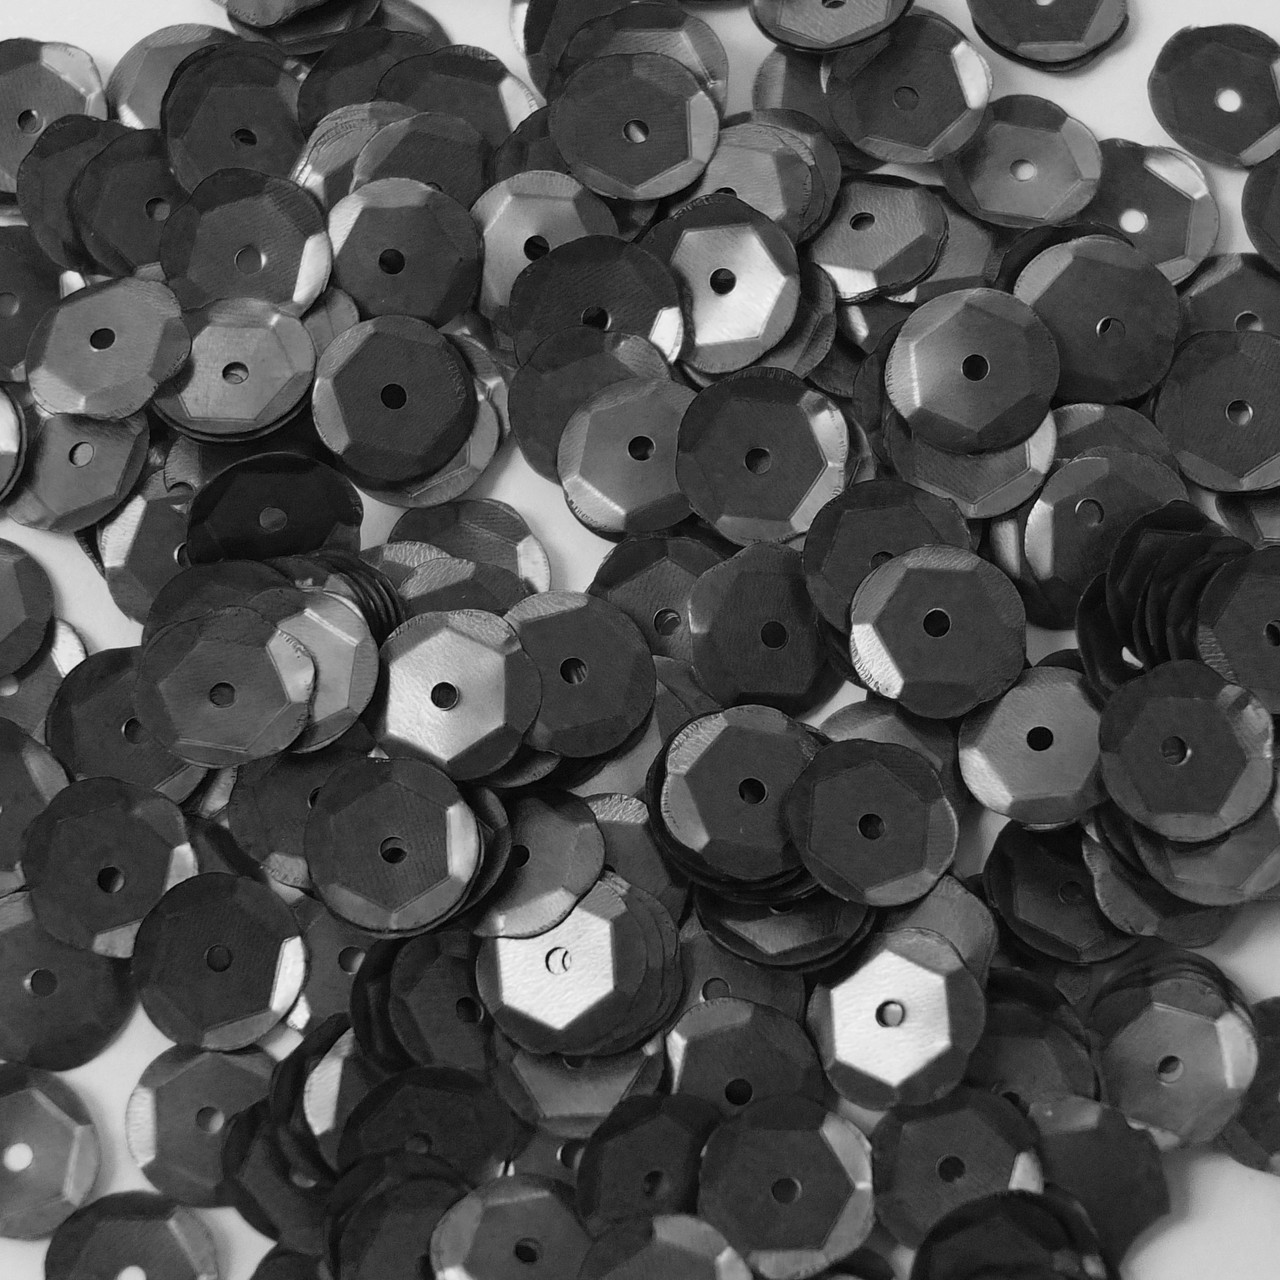 10mm Cup Sequins Black Matte Metallic